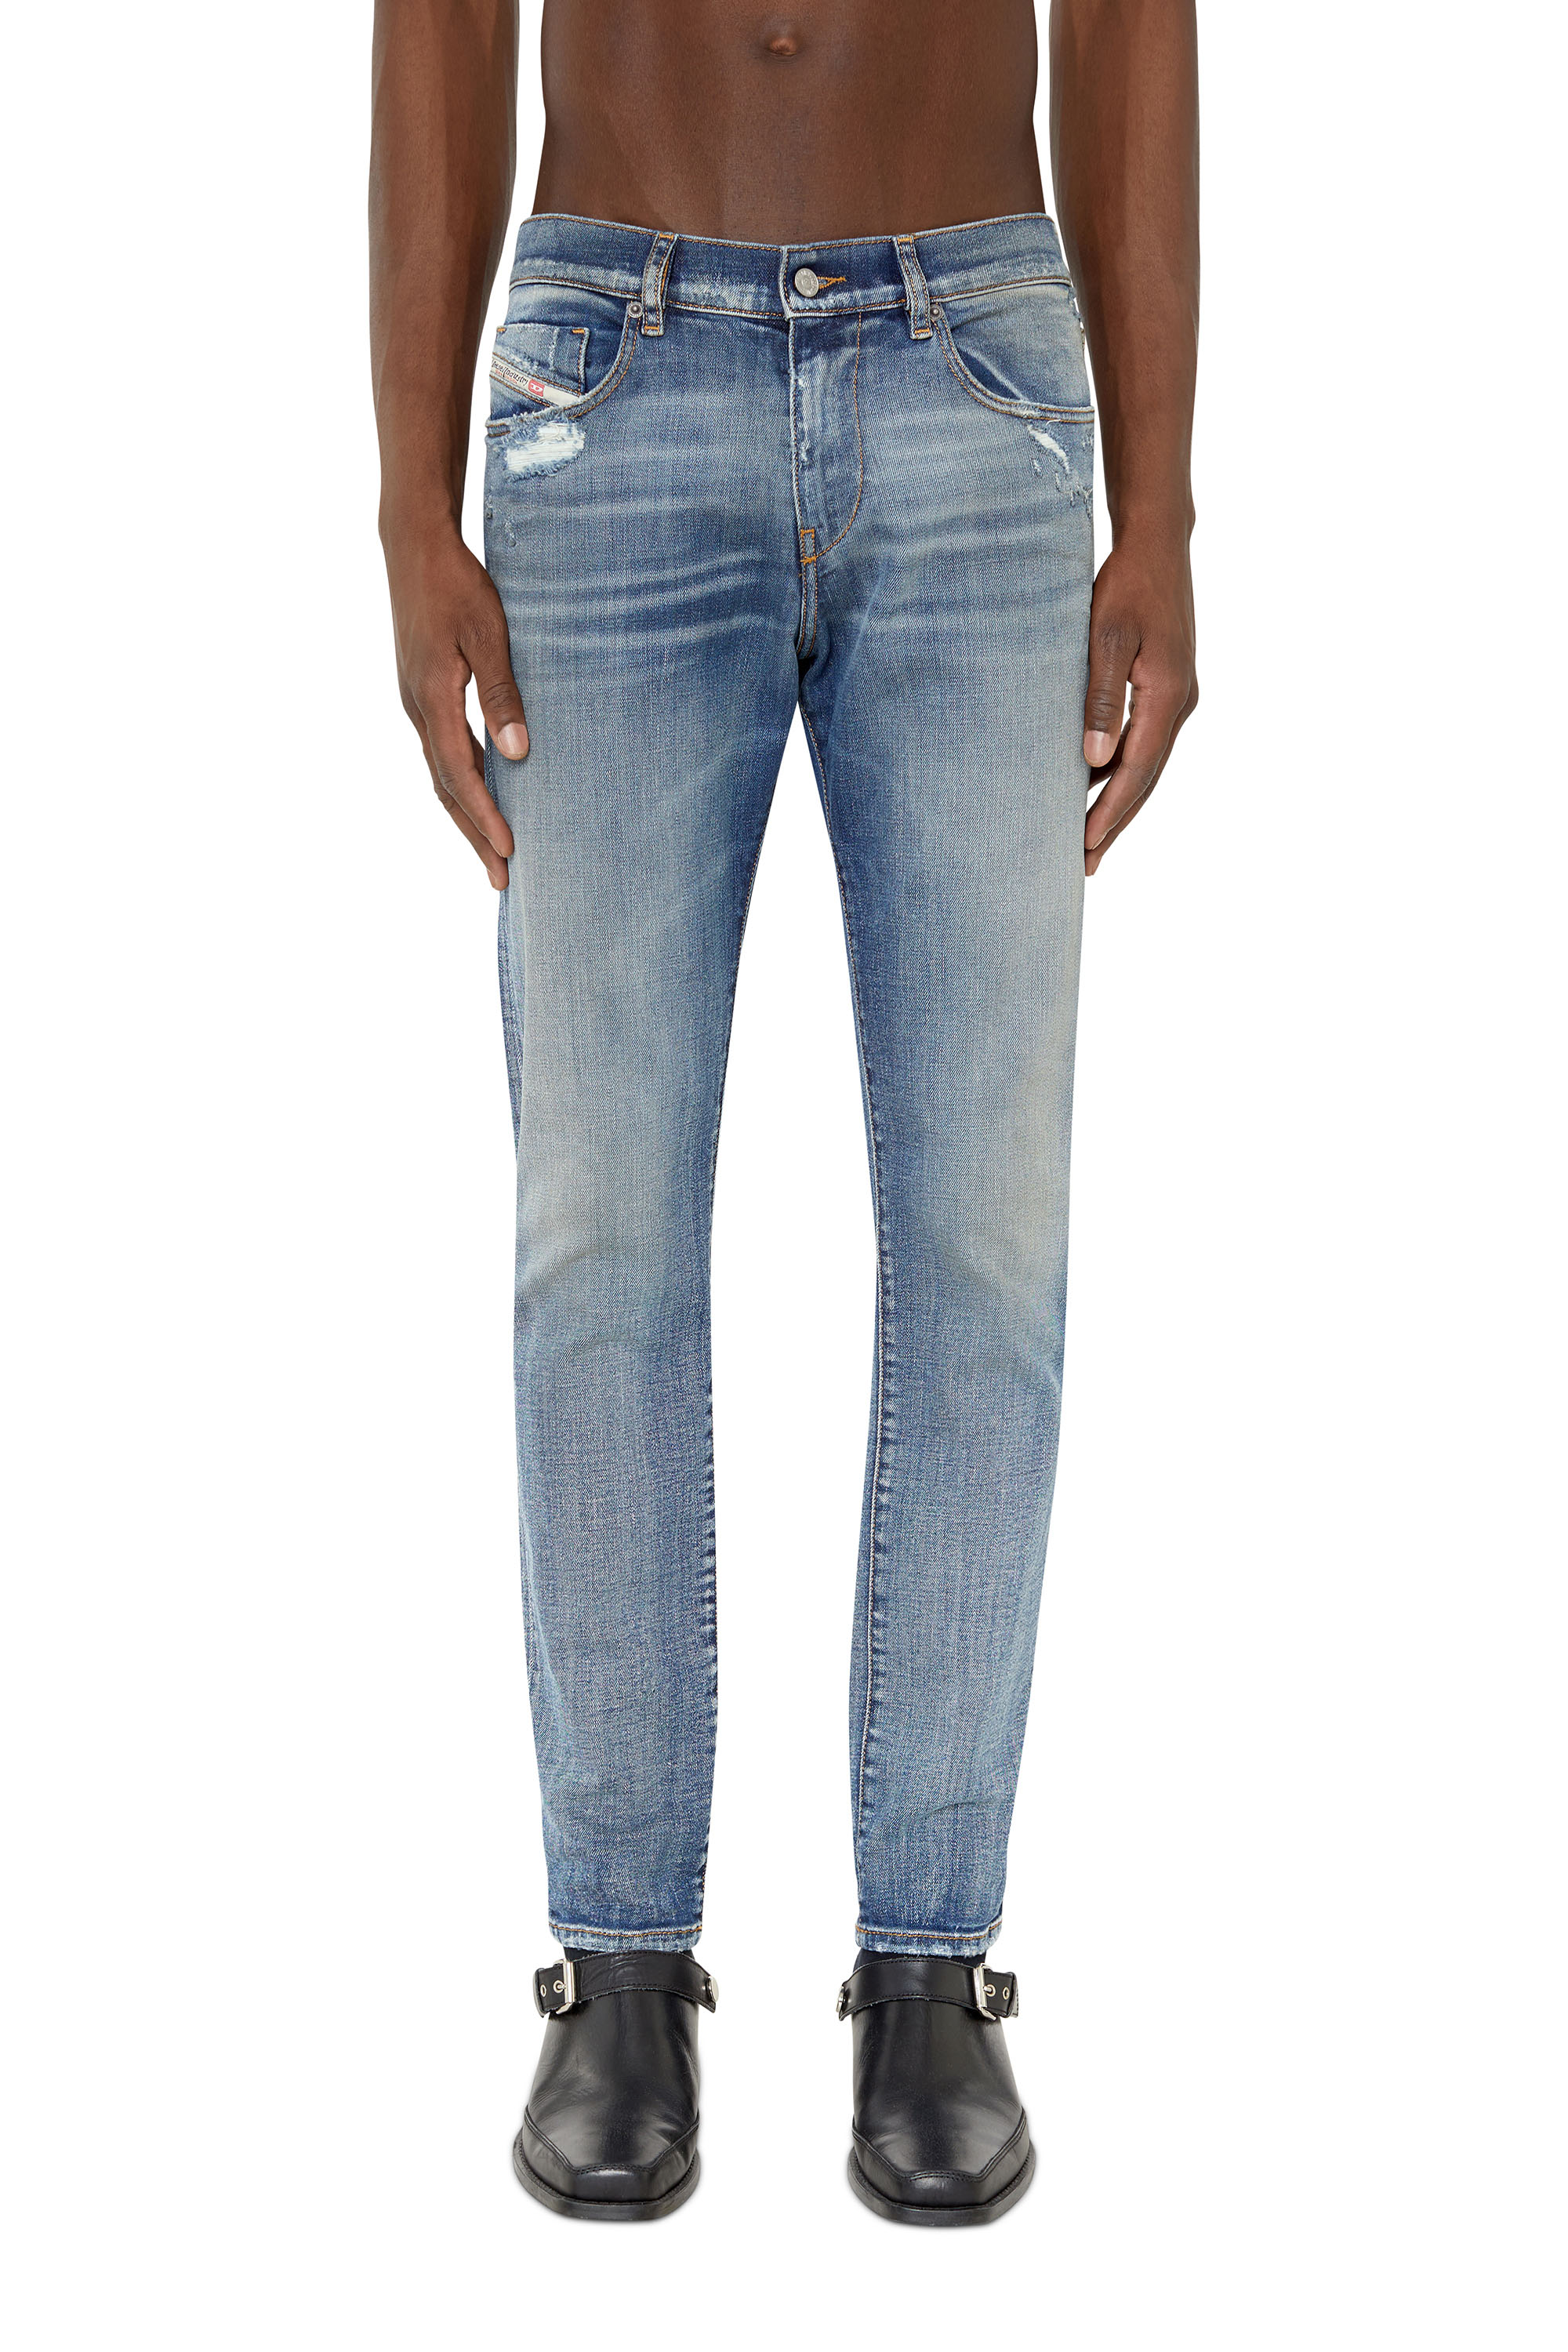 D-luster jeans skinny lavaggio chiaroDIESEL in Denim da Uomo colore Blu Uomo Abbigliamento da Jeans da Jeans skinny 